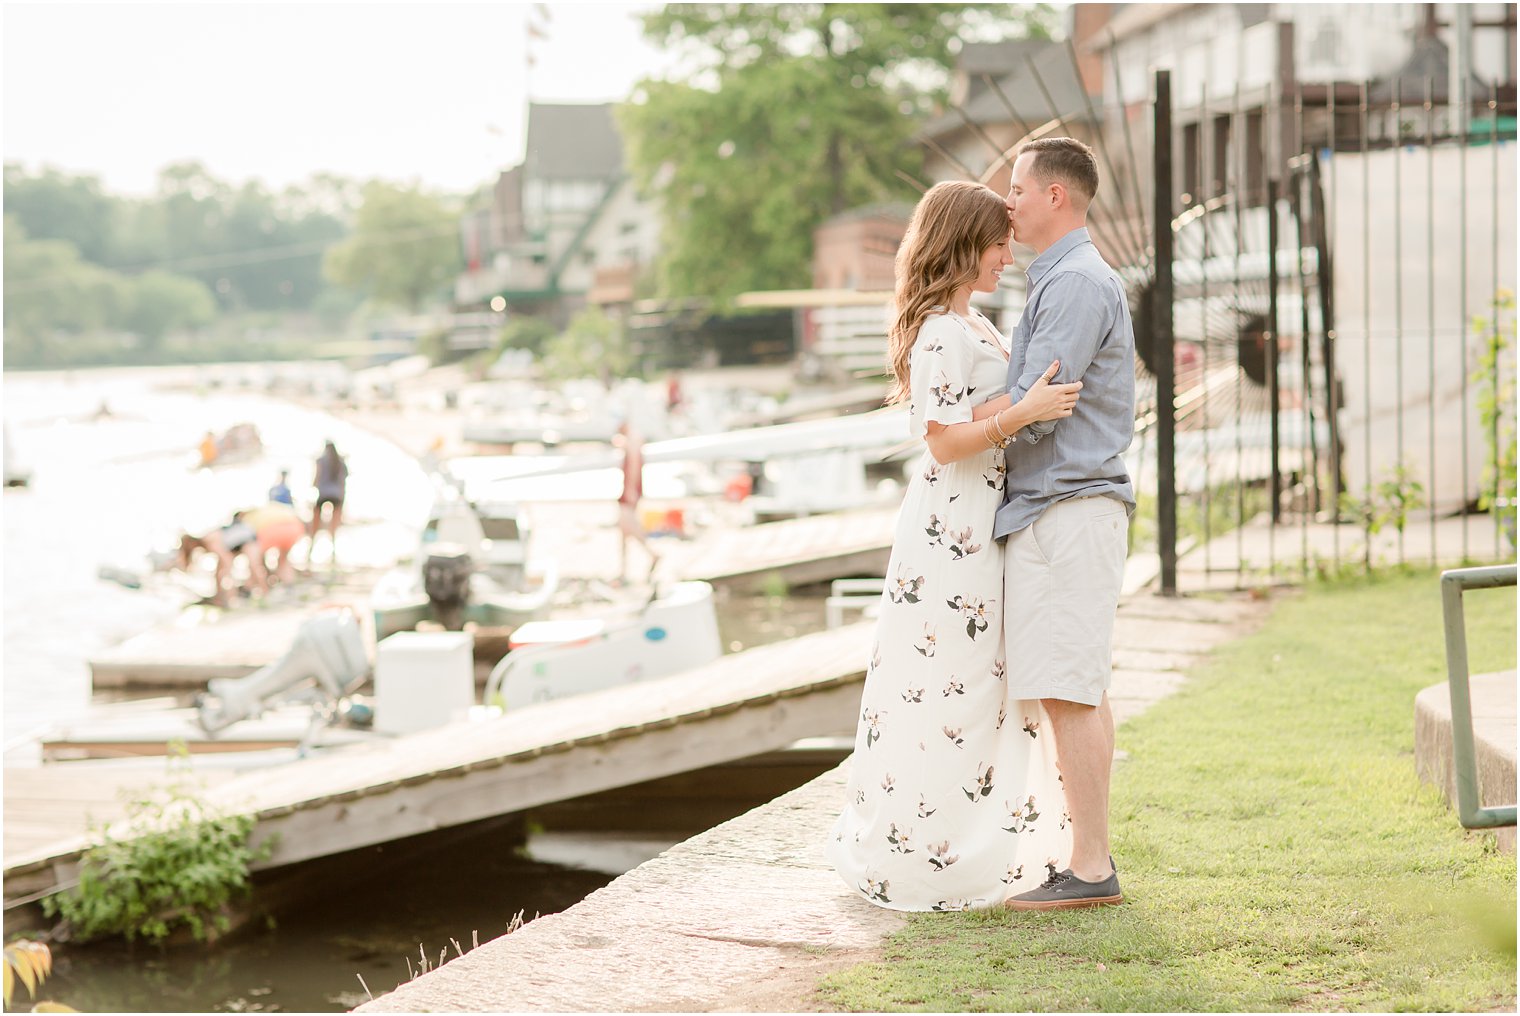 Boathouse engagement photos in Philadelphia